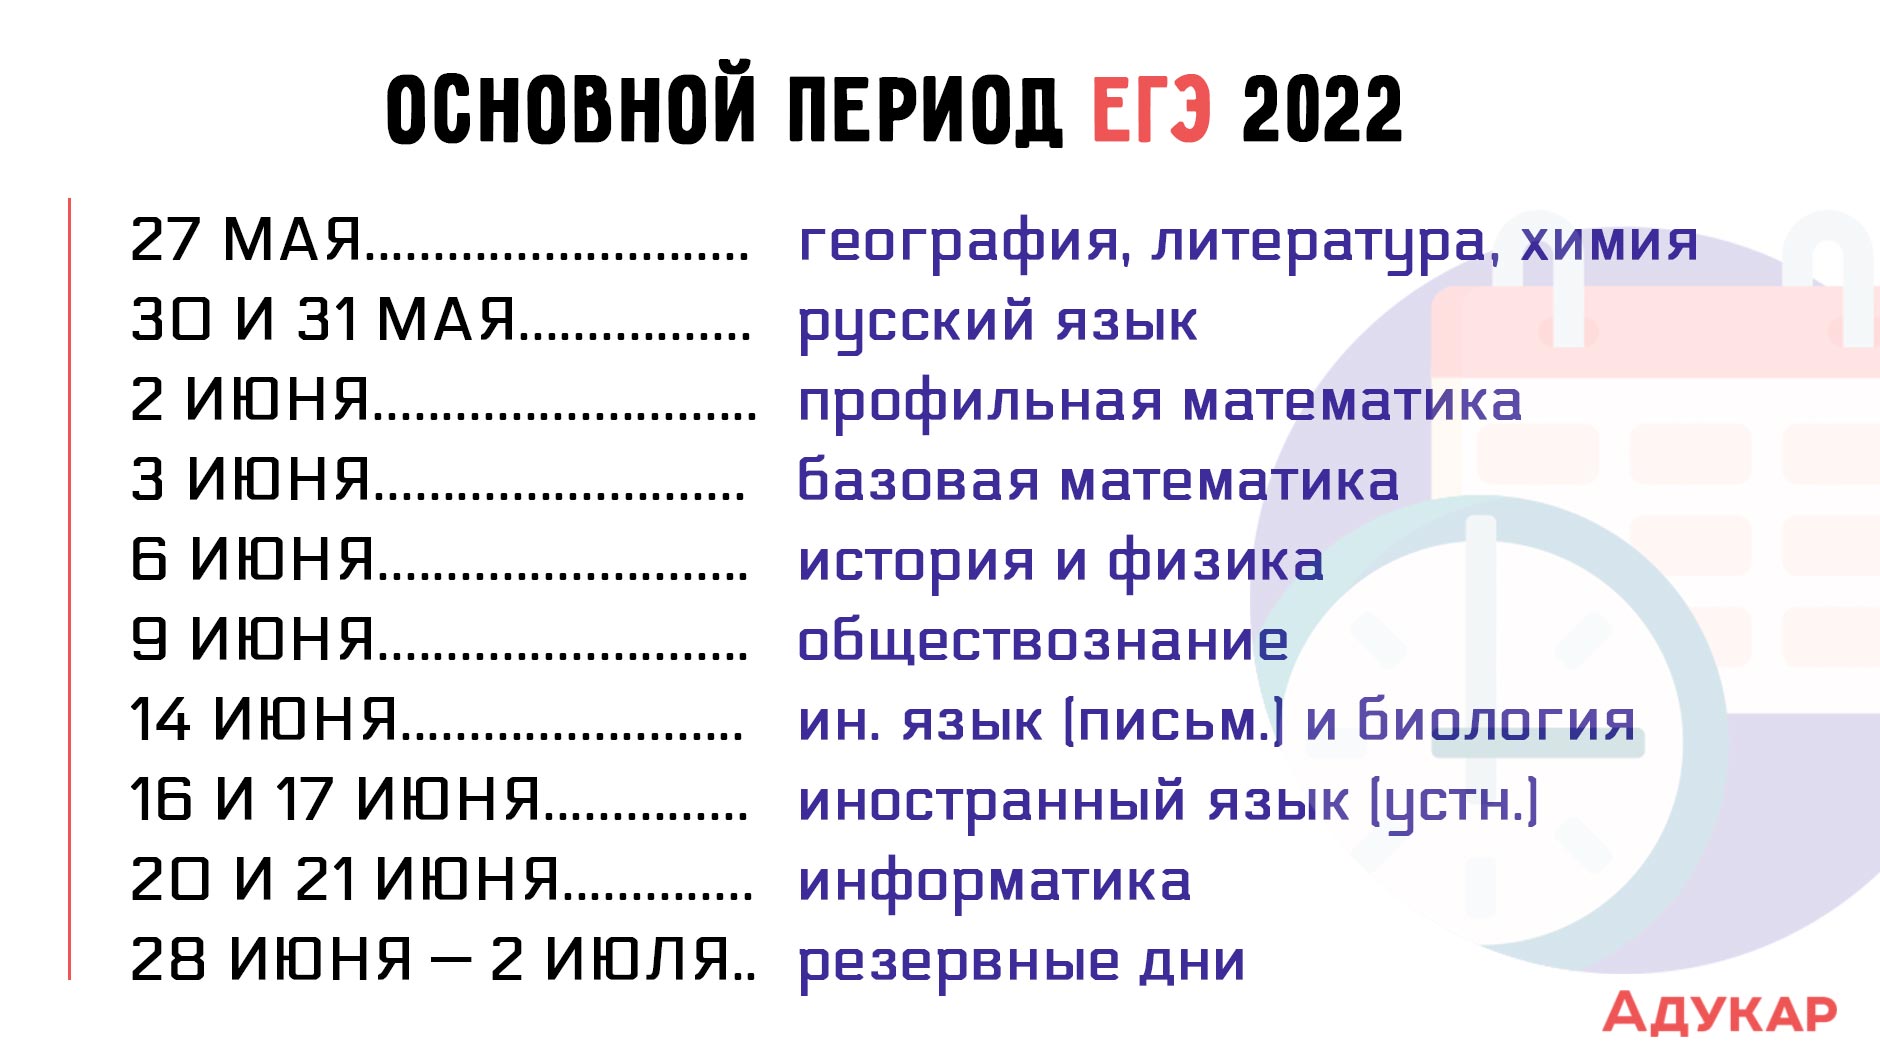 Продолжительность егэ в 2024 году. Даты экзаменов ЕГЭ 2022. Основной период сдачи ЕГЭ 2022. Дата экзаменов ЕГЭ В 2022 году. Сроки проведения ЕГЭ 2022.